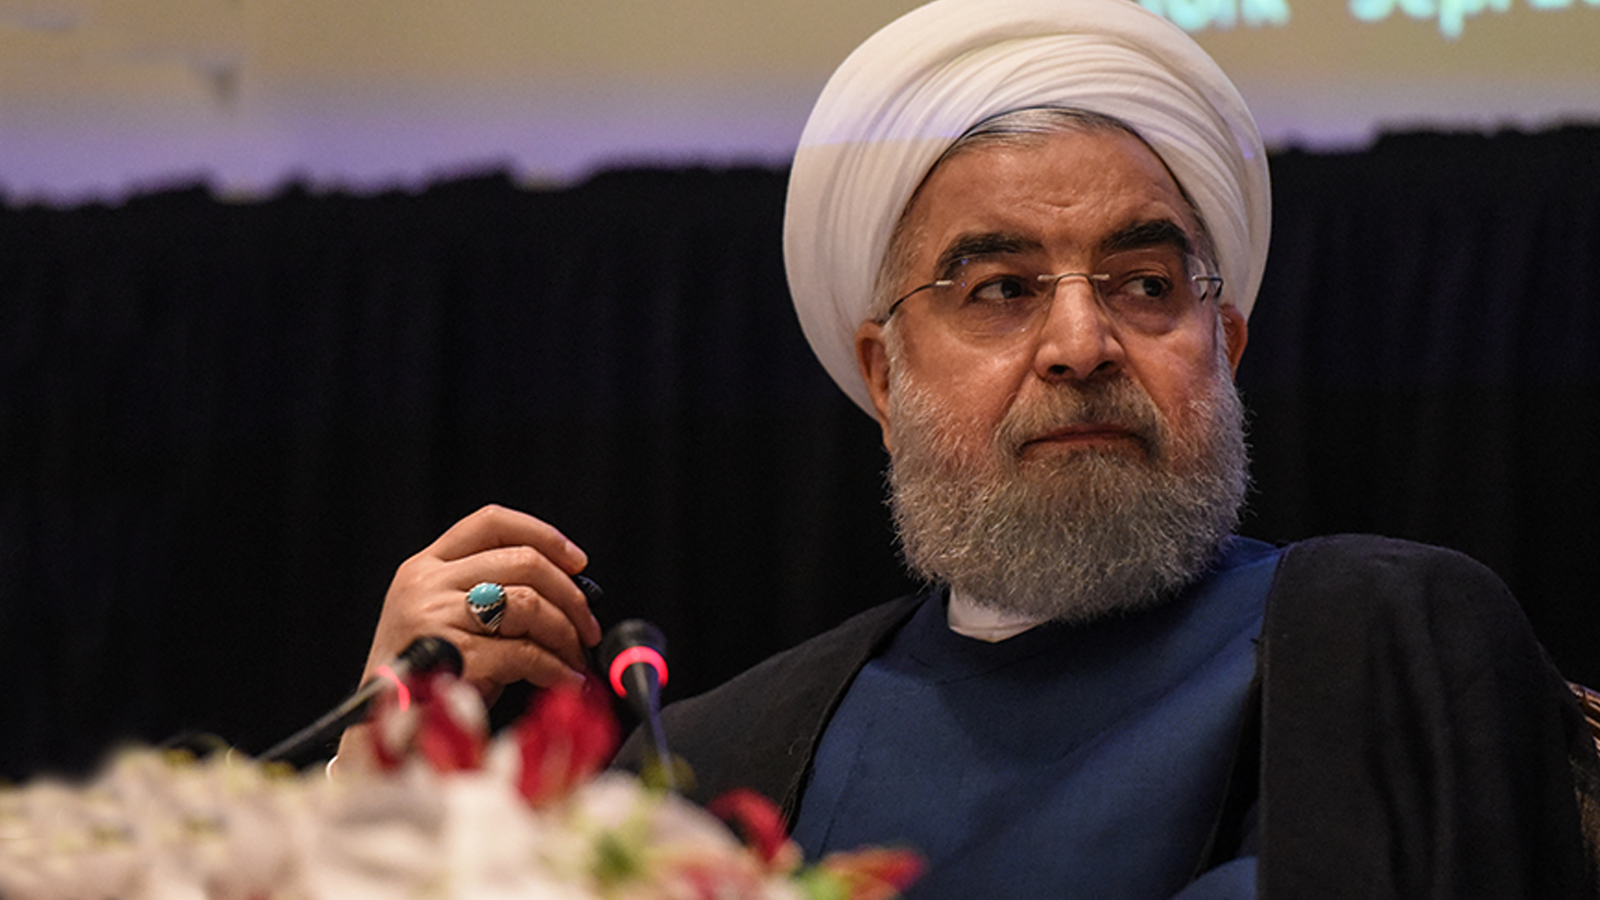 ما بين التهديد الخارجي والتهديدات الداخلية، يقف روحاني في مرمى خصومه دون الكثير من الحماية